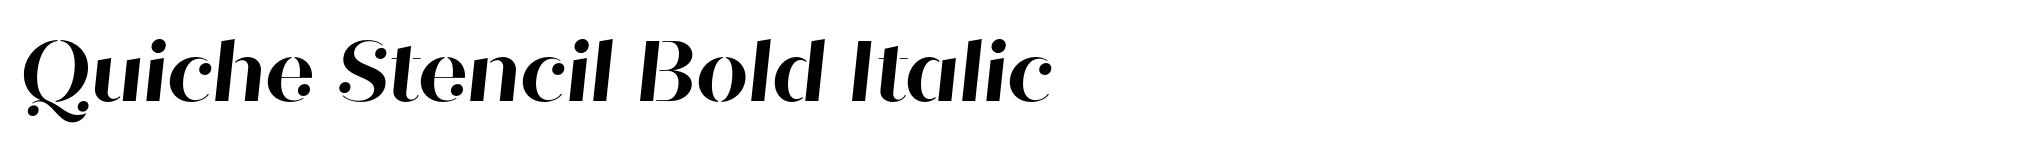 Quiche Stencil Bold Italic image